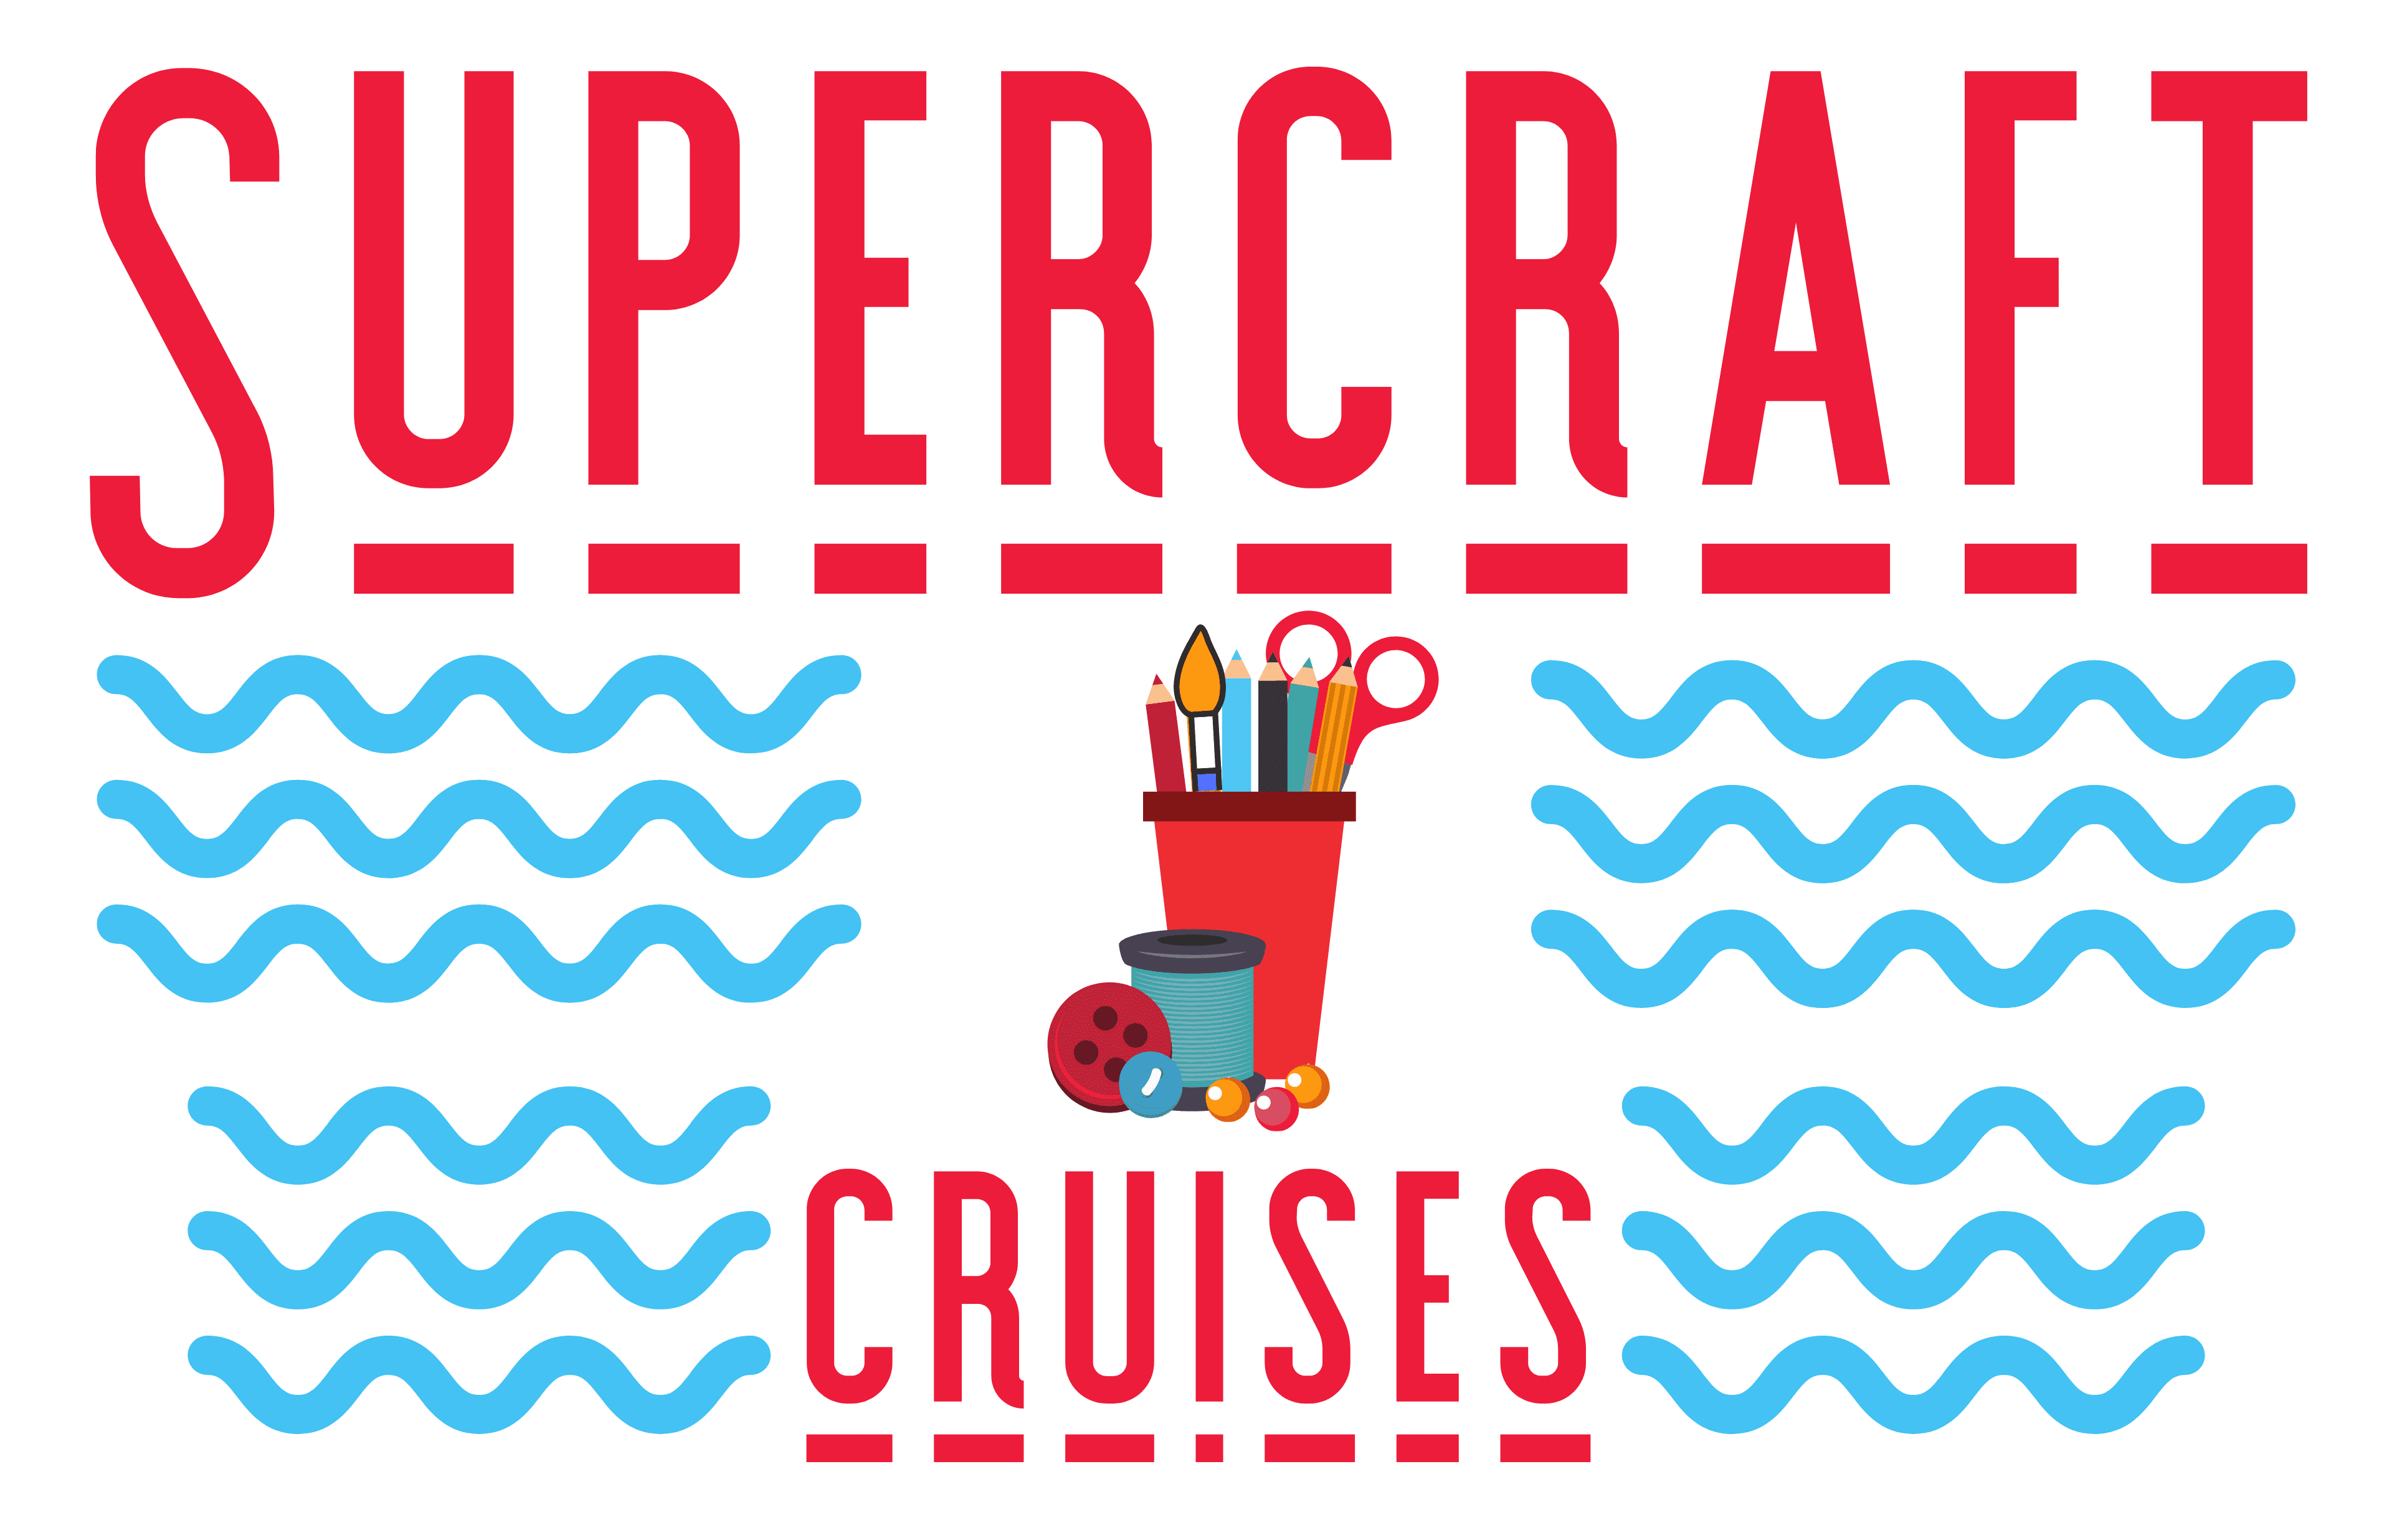 Supercraft Cruises Logo Final Apr 2020 V 2.1 1 Copy 1